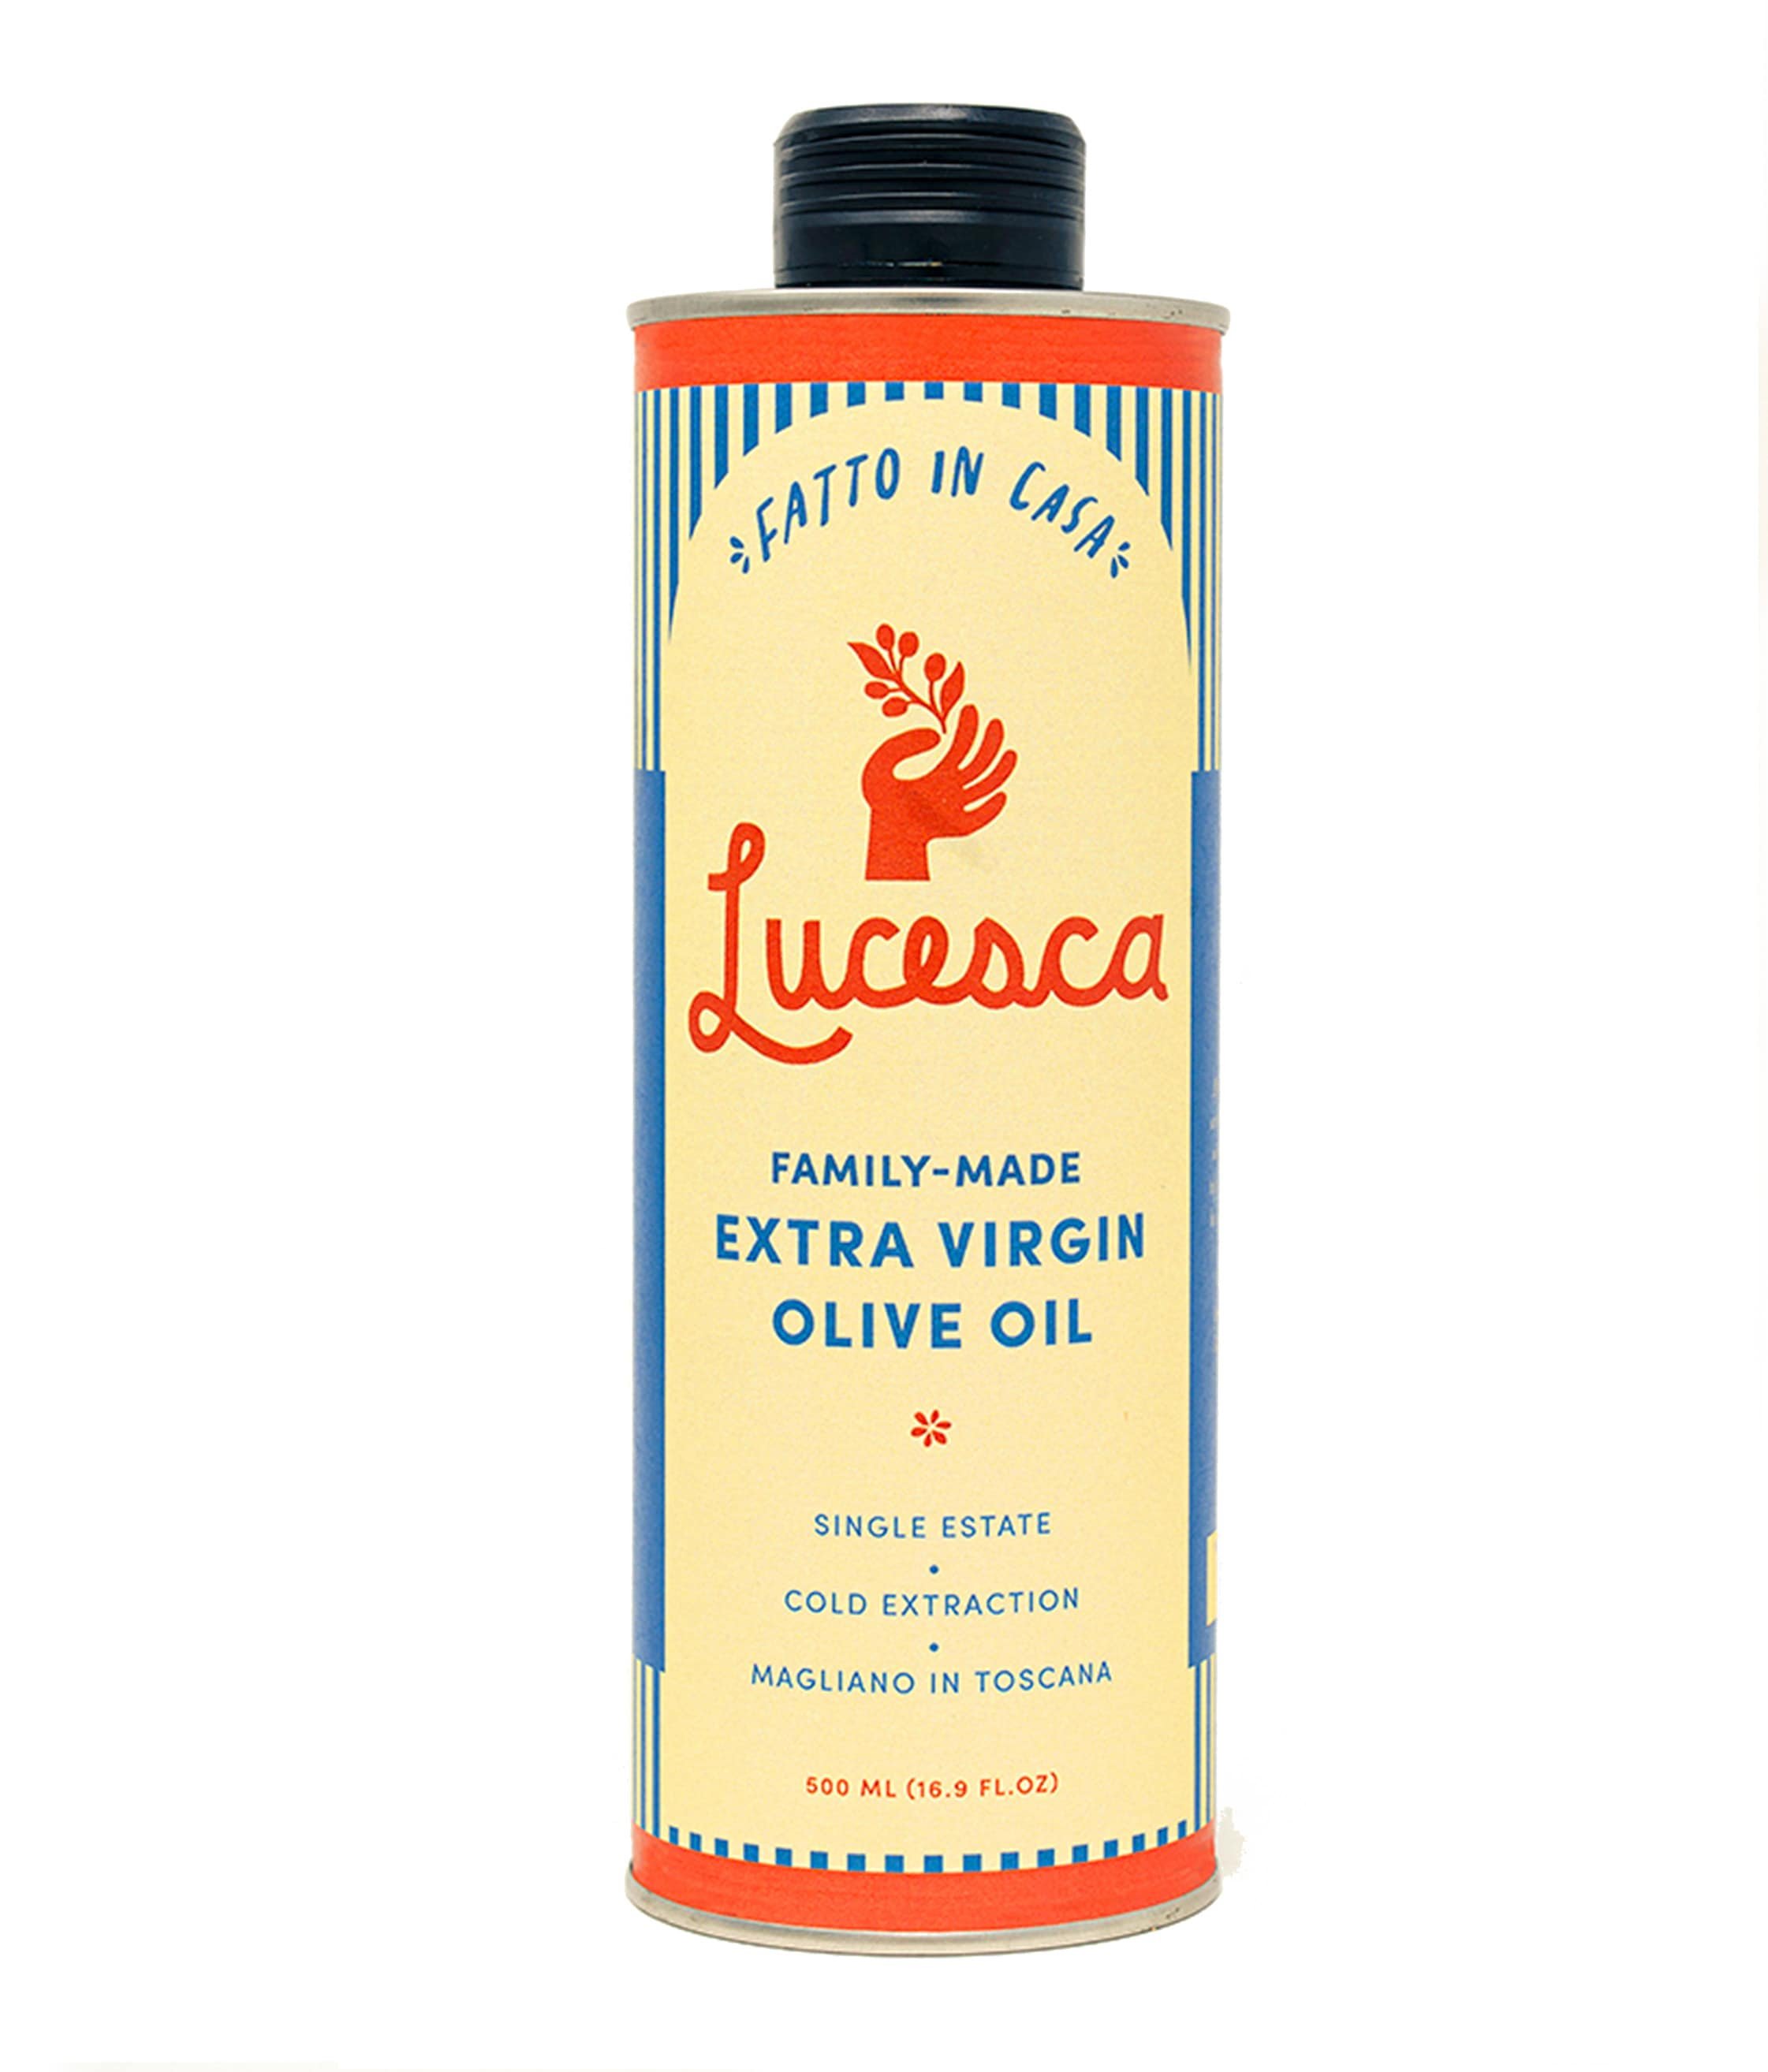 Lucesca Olive Oil Bottles